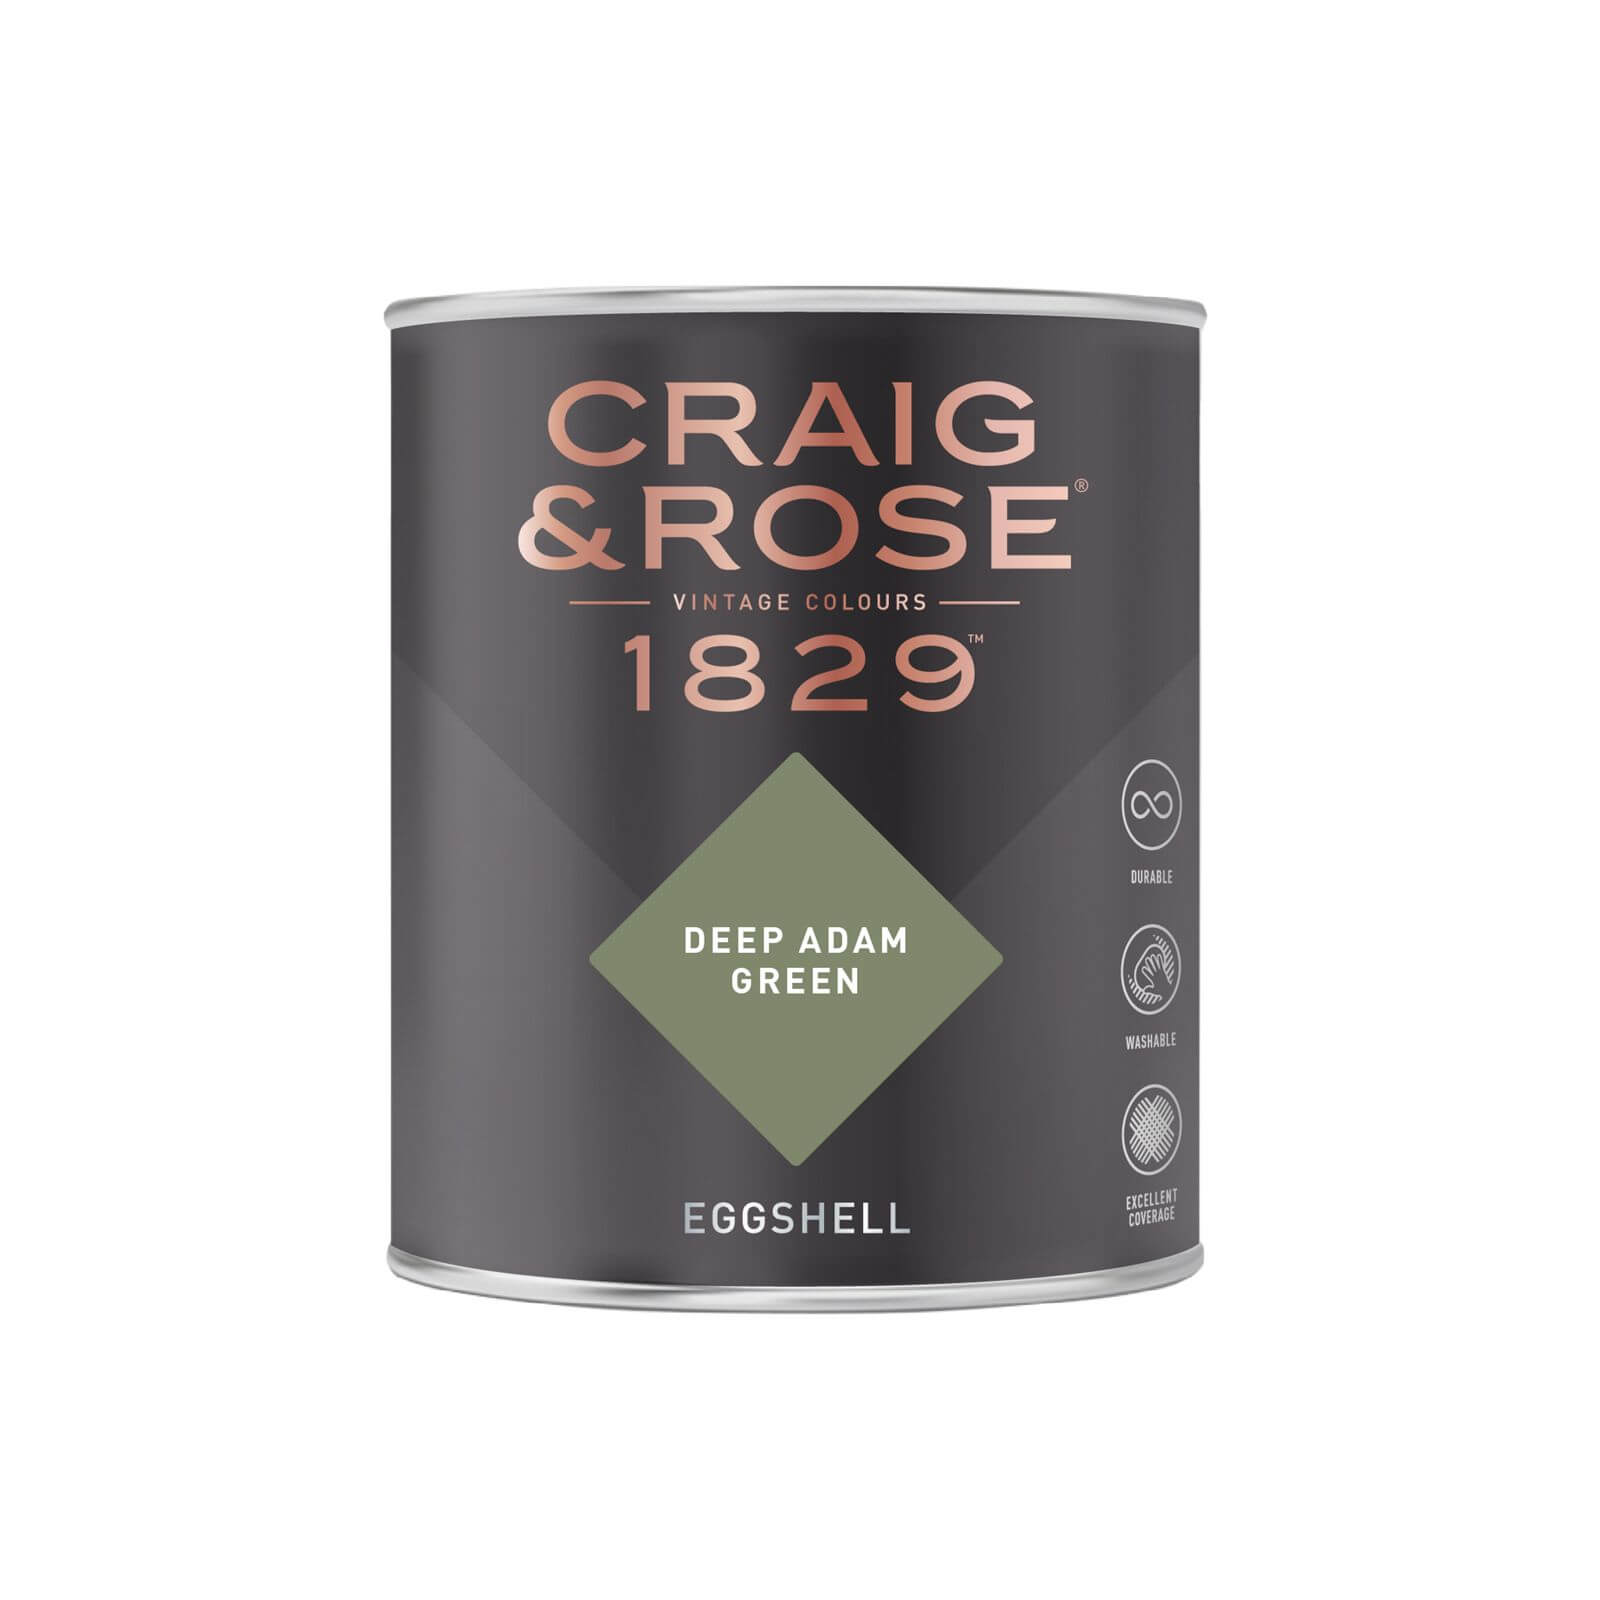 Craig & Rose 1829 Eggshell Paint Deep Adam Green - 750ml